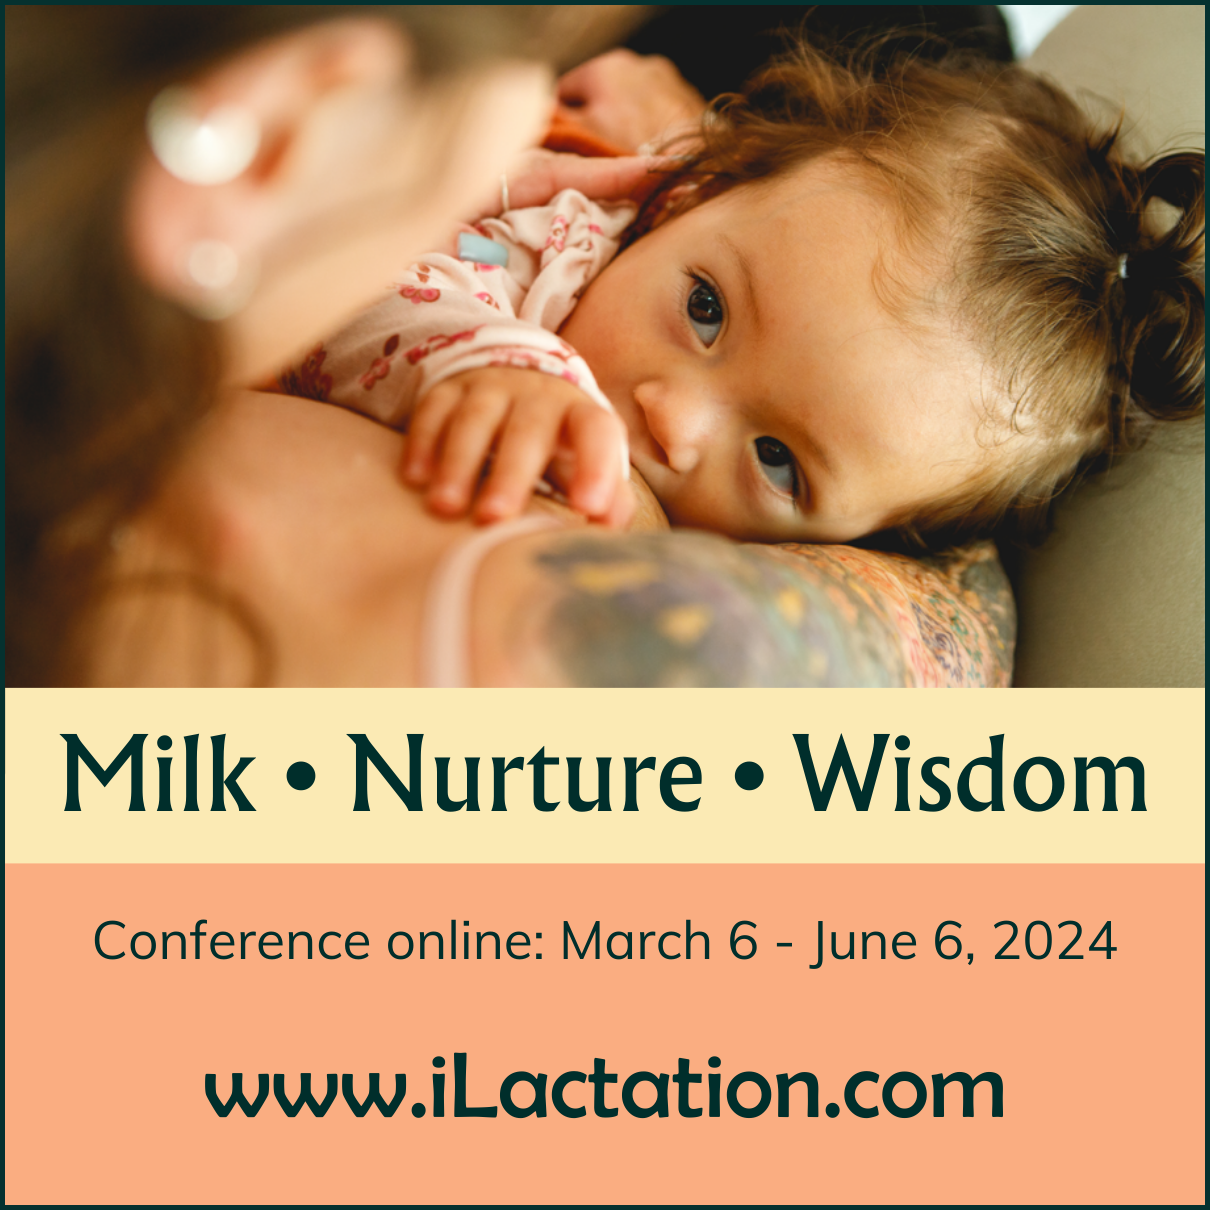 Milk • Nurture • Wisdom conference